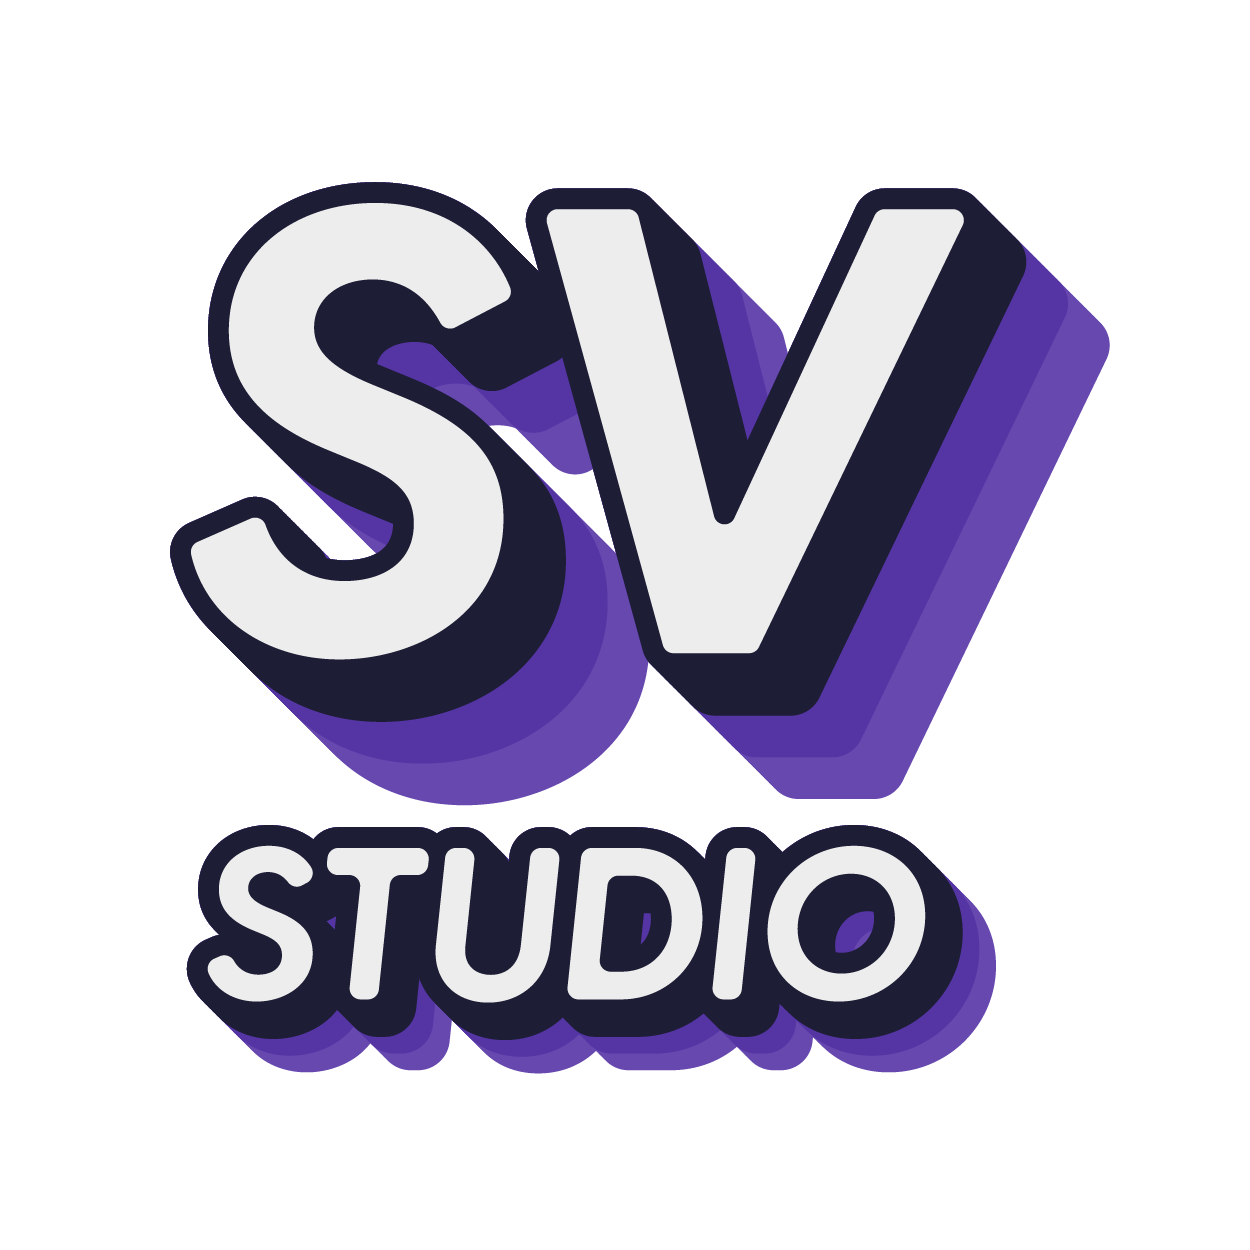 Studio SV